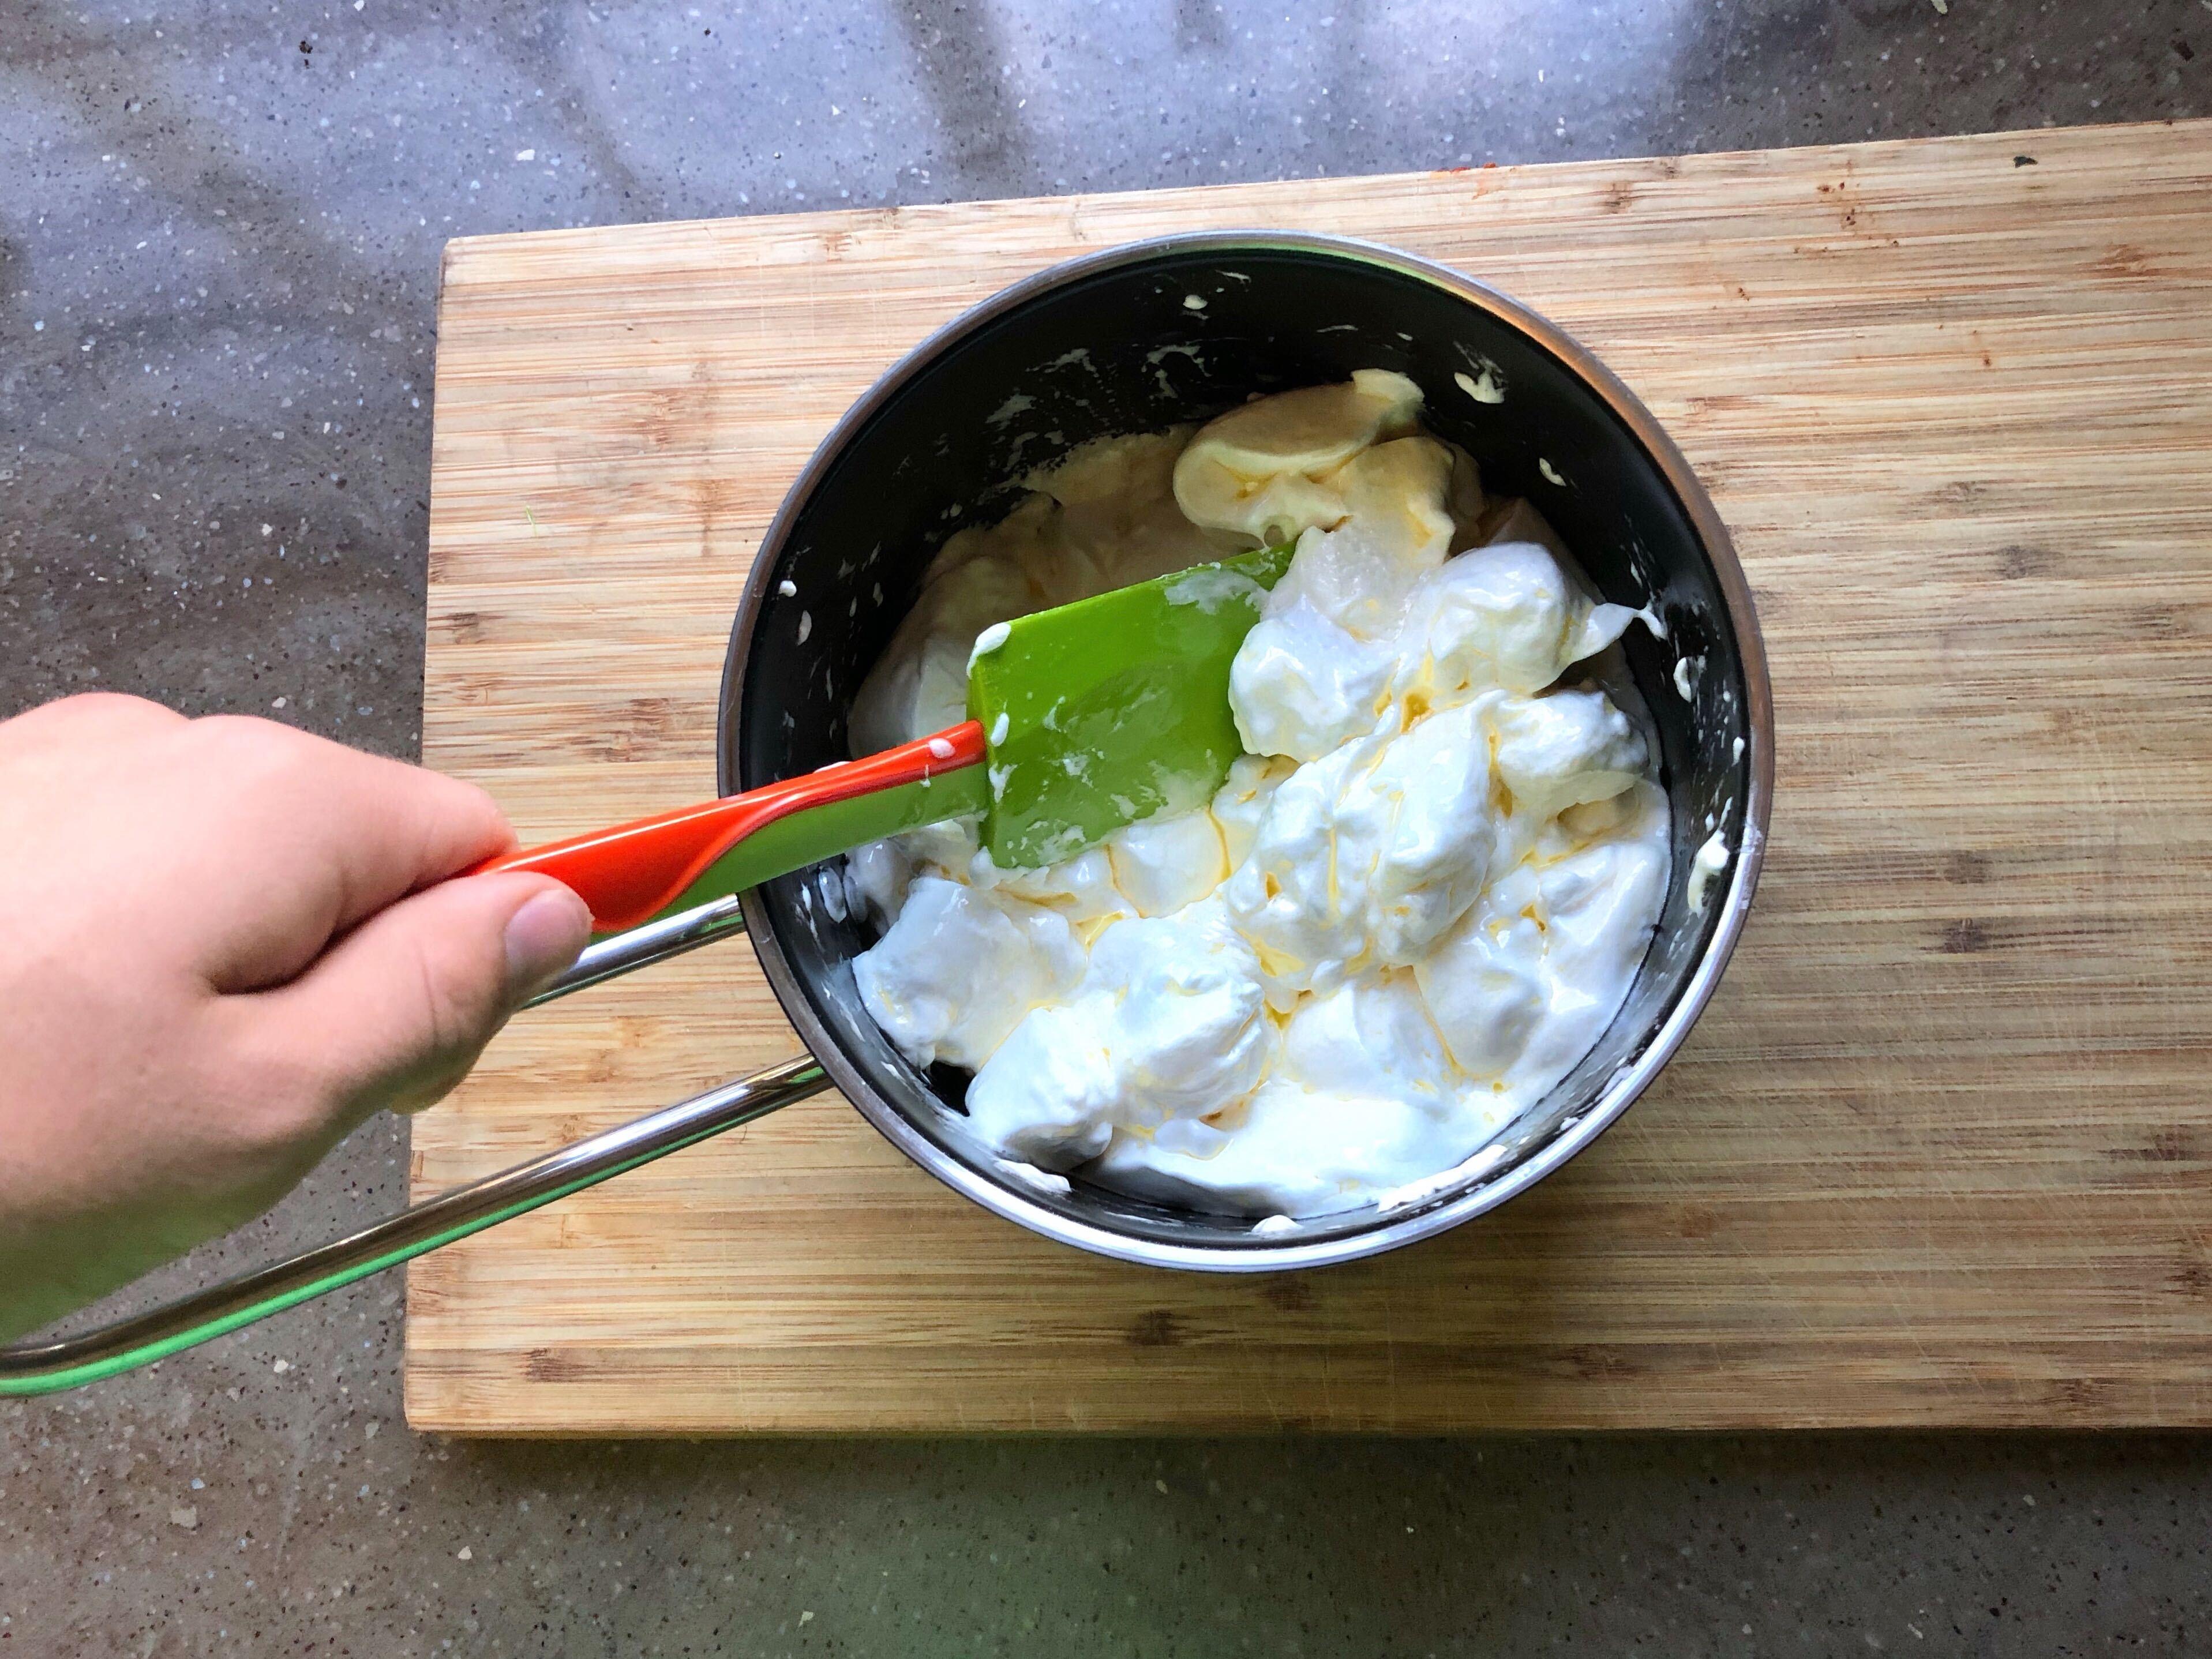 SÅ: Etterpå smeltet vi marshmallows og smør, og rørte dette sammen. Du kan bruke mikrobølgeovn (smart og kjapt hvis du har) eller smelt blandingen i en gryte på ovnen slik vi gjorde (det funker også, men tar litt mer tid).